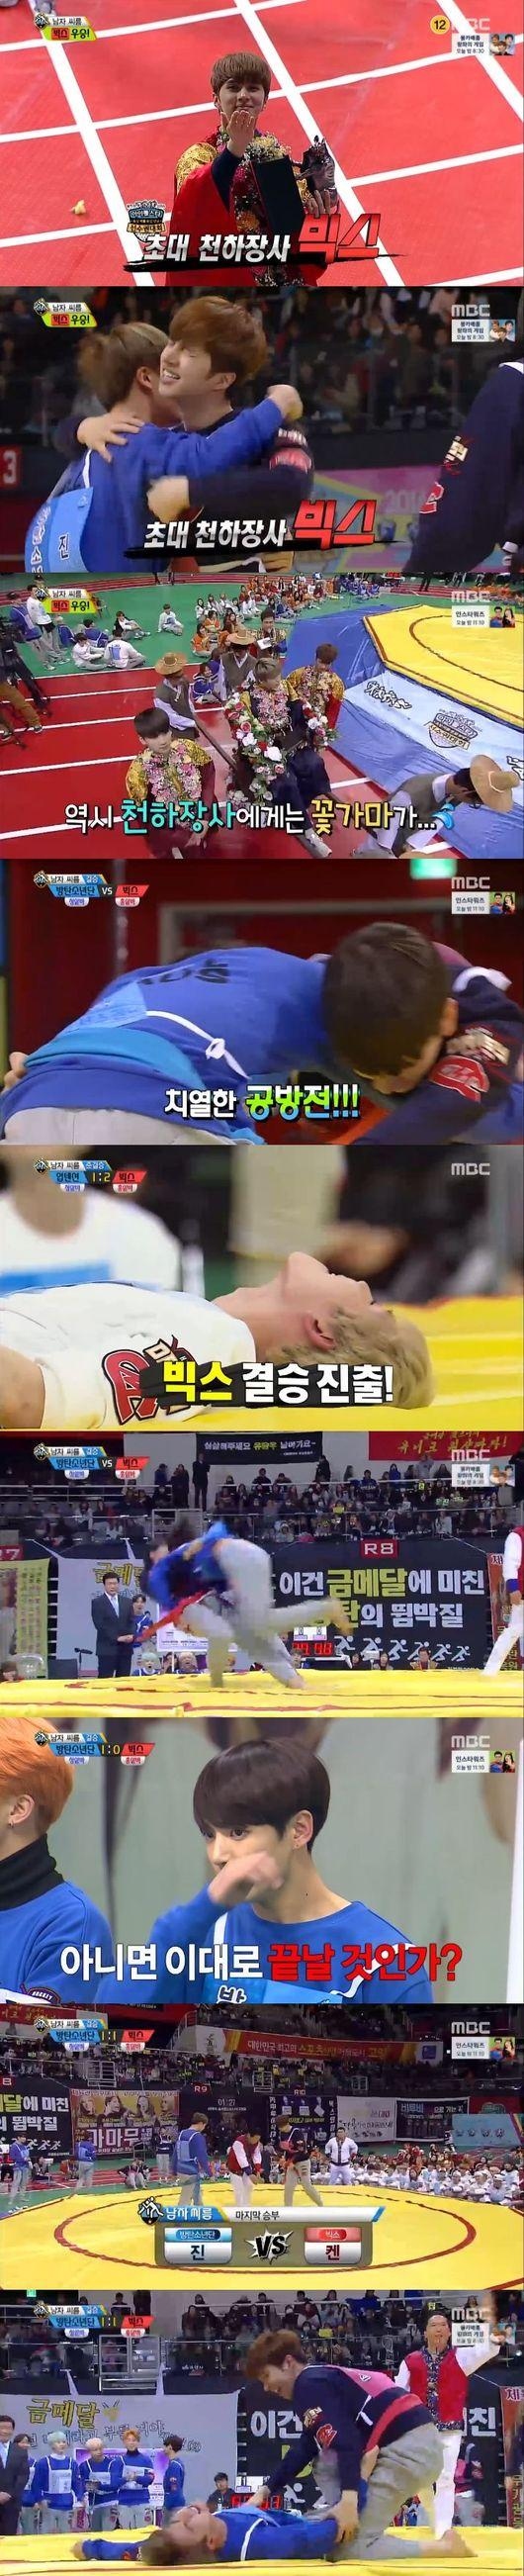 アイドル陸上大会 男性アイドルたちが韓国相撲で激戦 初代優勝に輝いたのは Kstyle